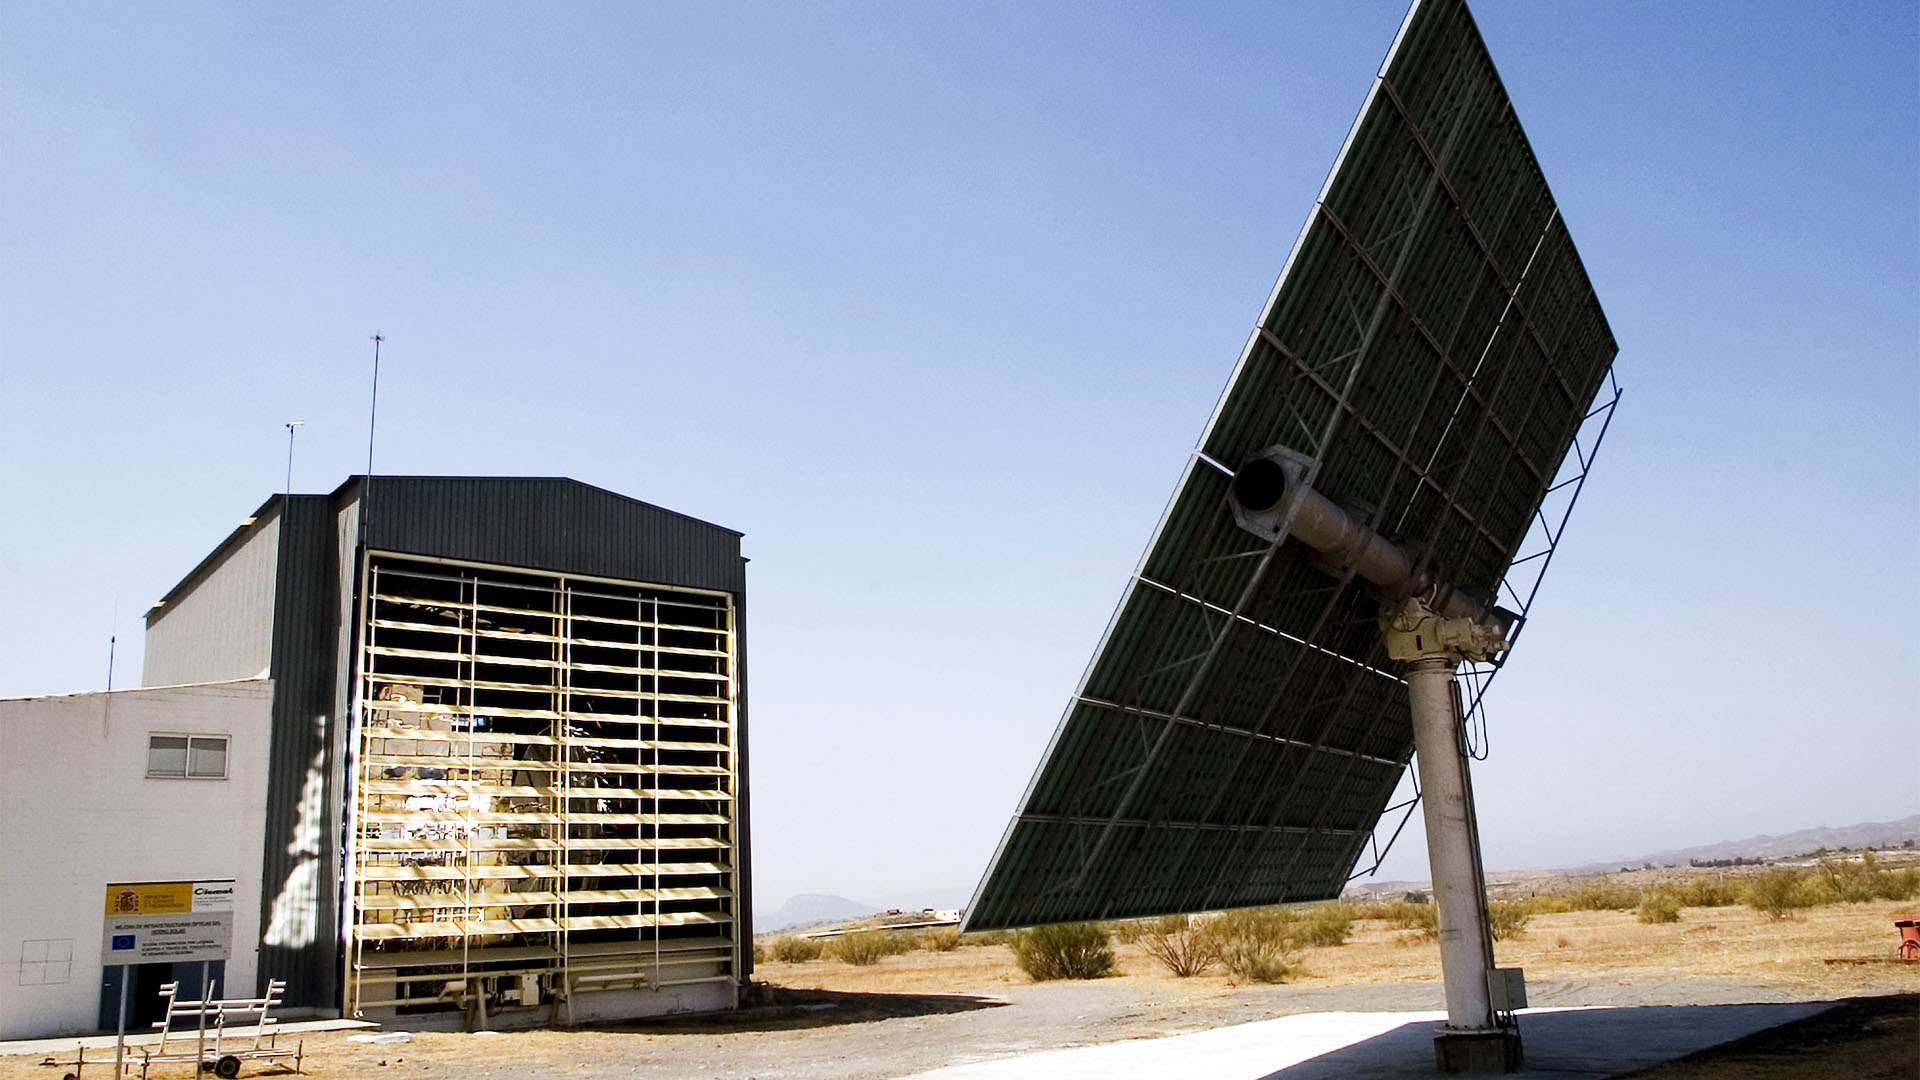 Plataforma Solar Almería – von der Internationalen Energieagentur 1973 als Reaktion auf die Ölkrise 1973 gegründet. Internationale Forschungs- und Versuchsanstalt. (© CIEMAT)